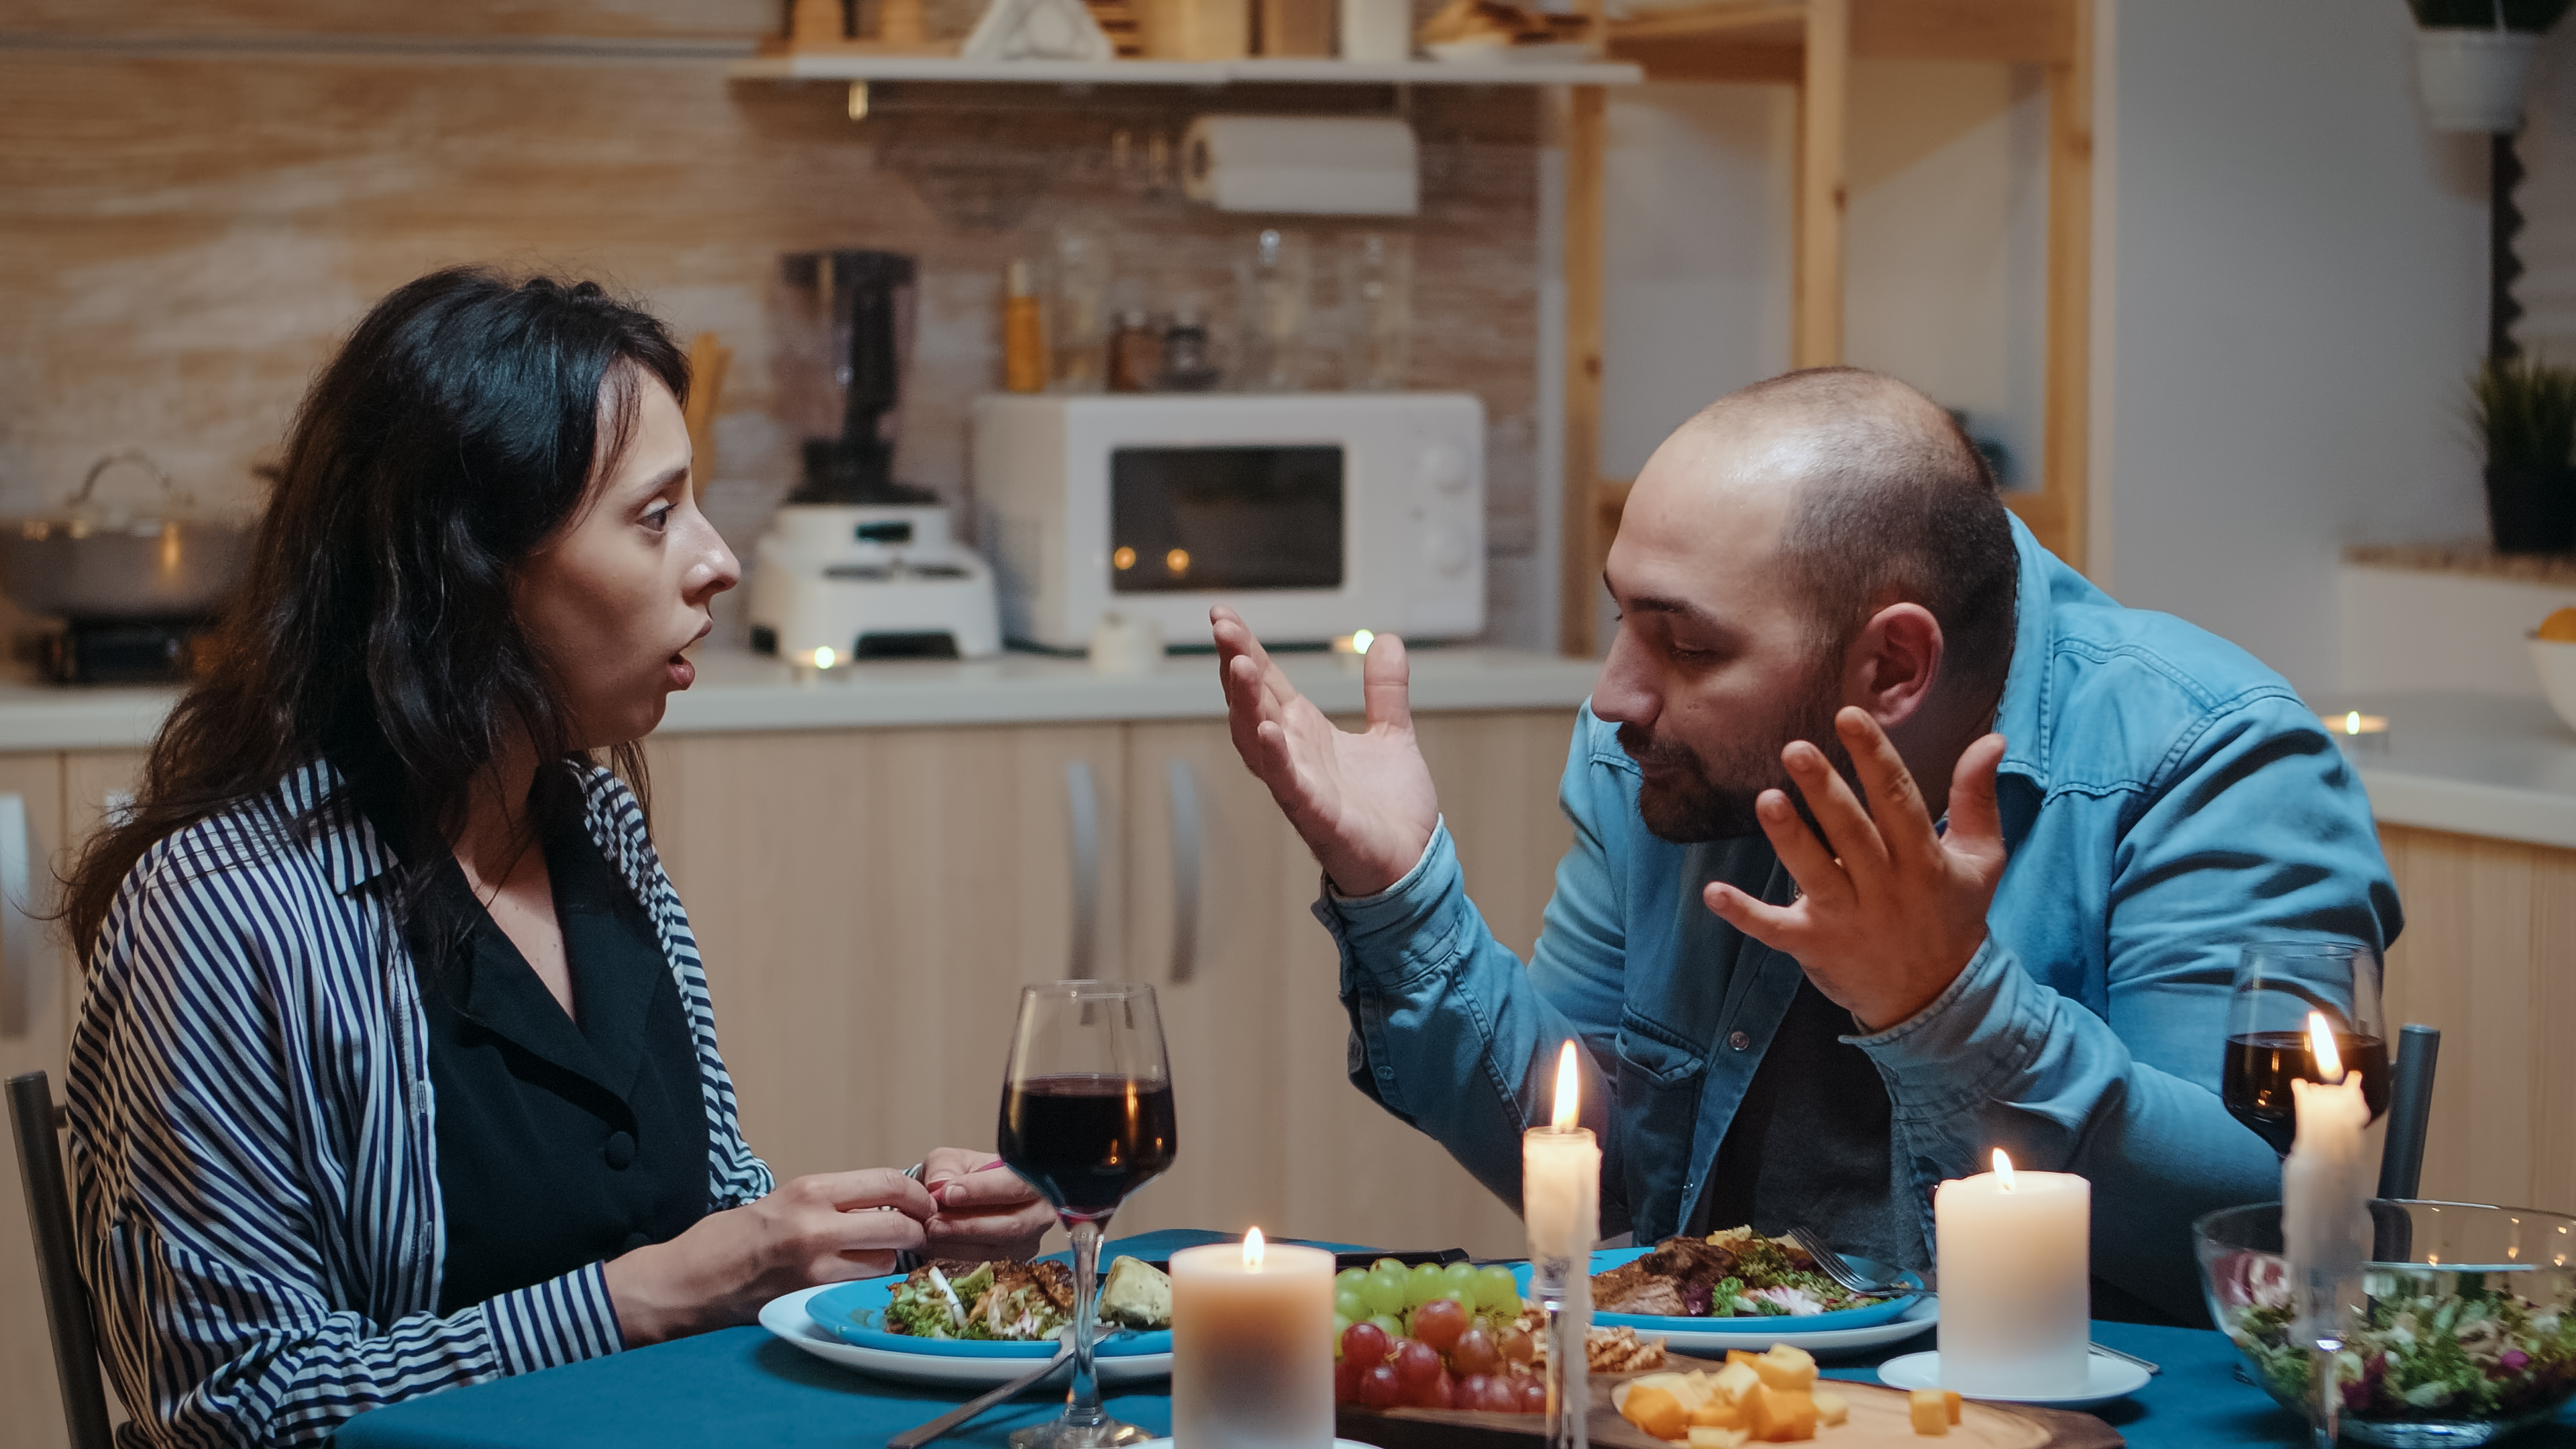 Un homme se dispute avec sa petite amie pendant le dîner | Source : Shutterstock